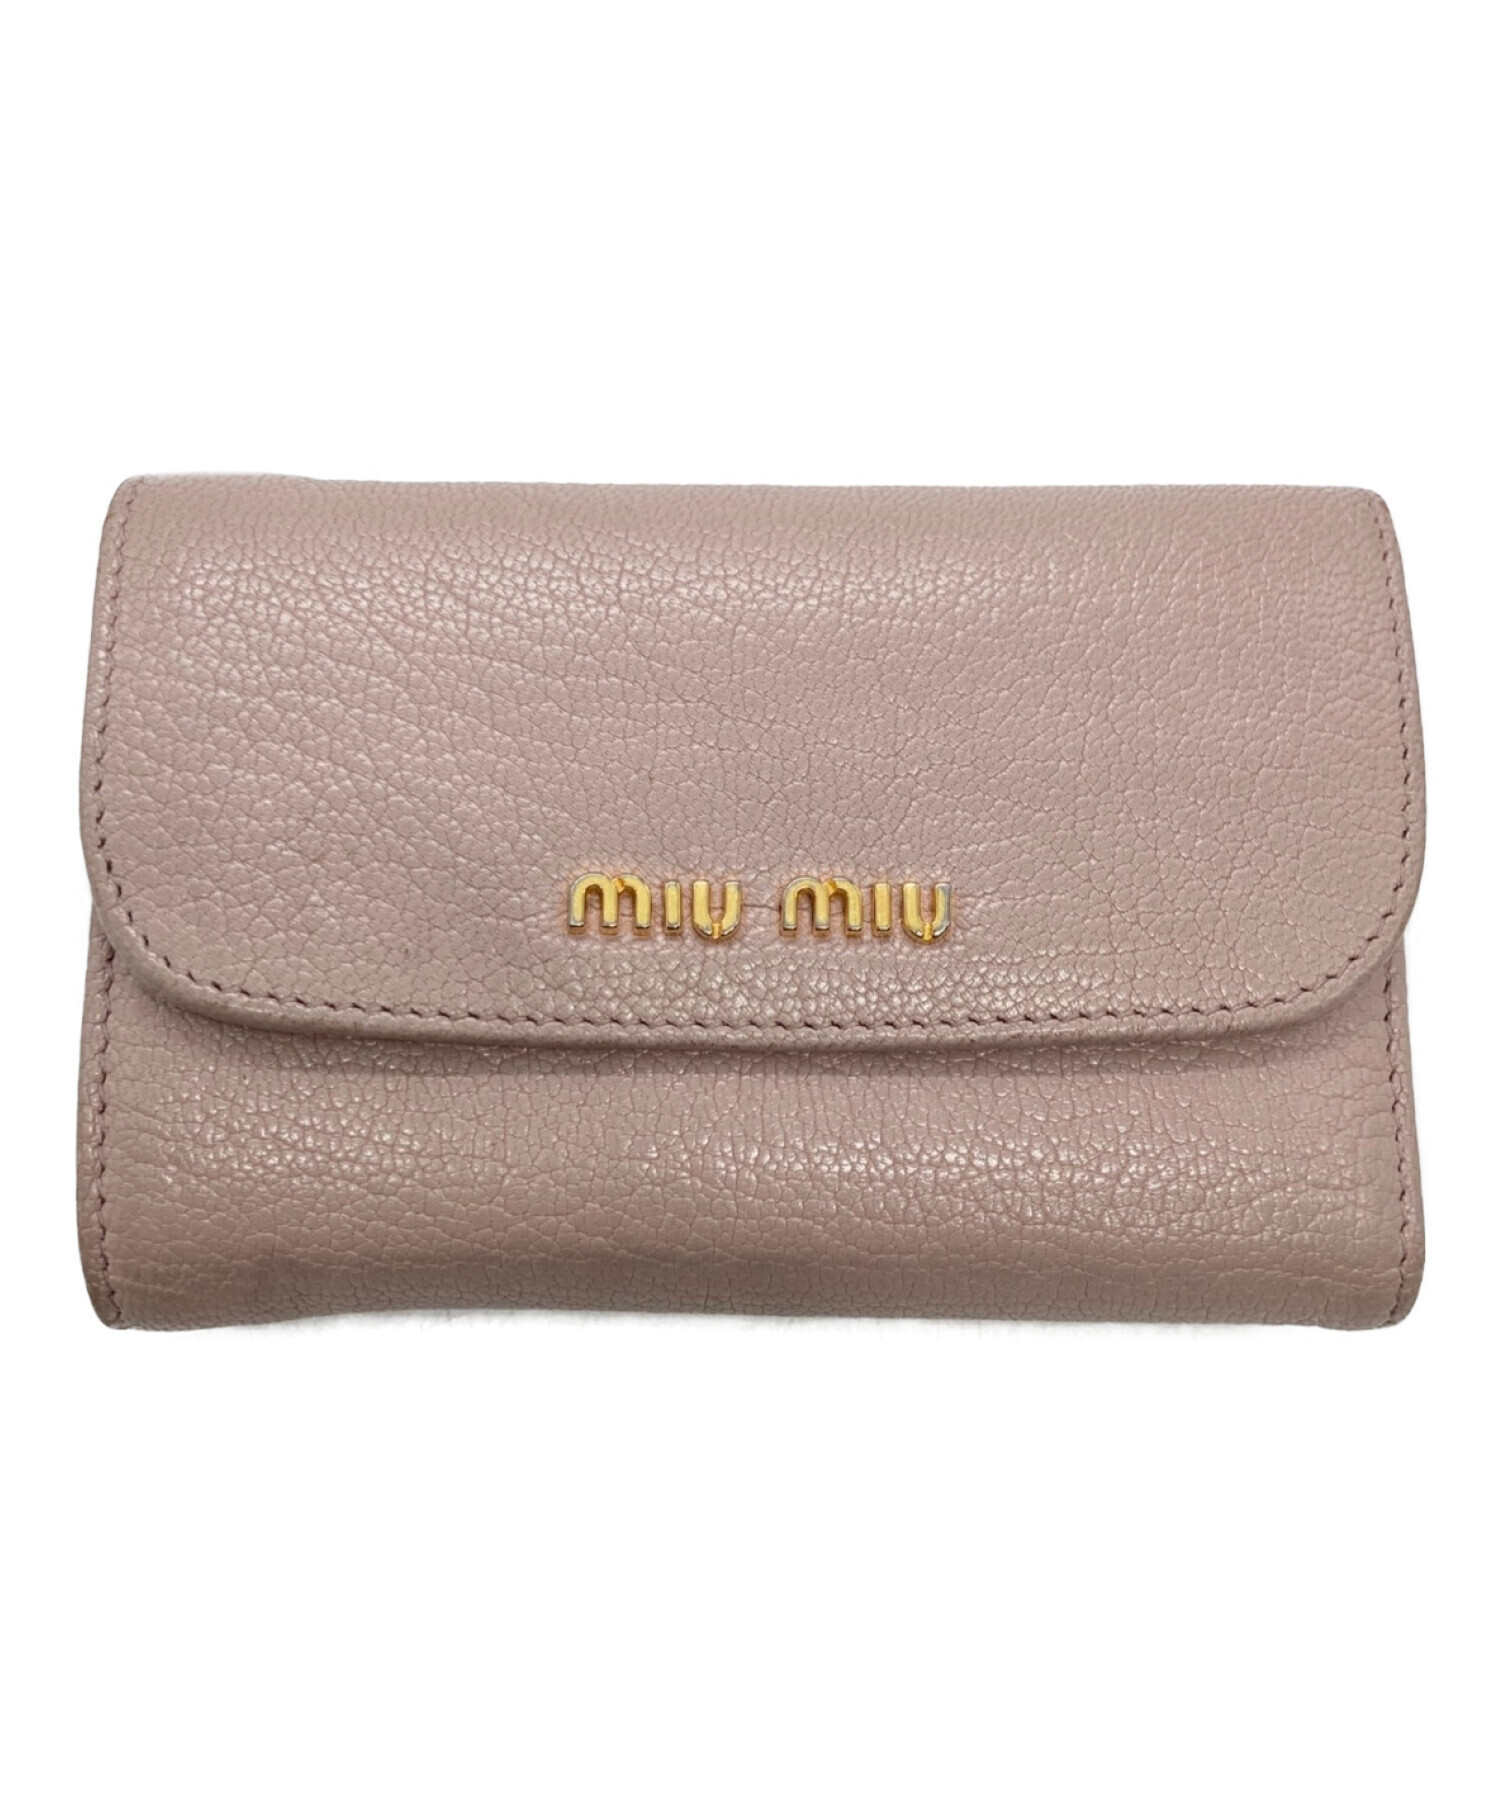 中古・古着通販】MIU MIU (ミュウミュウ) 3つ折り財布 ピンク サイズ